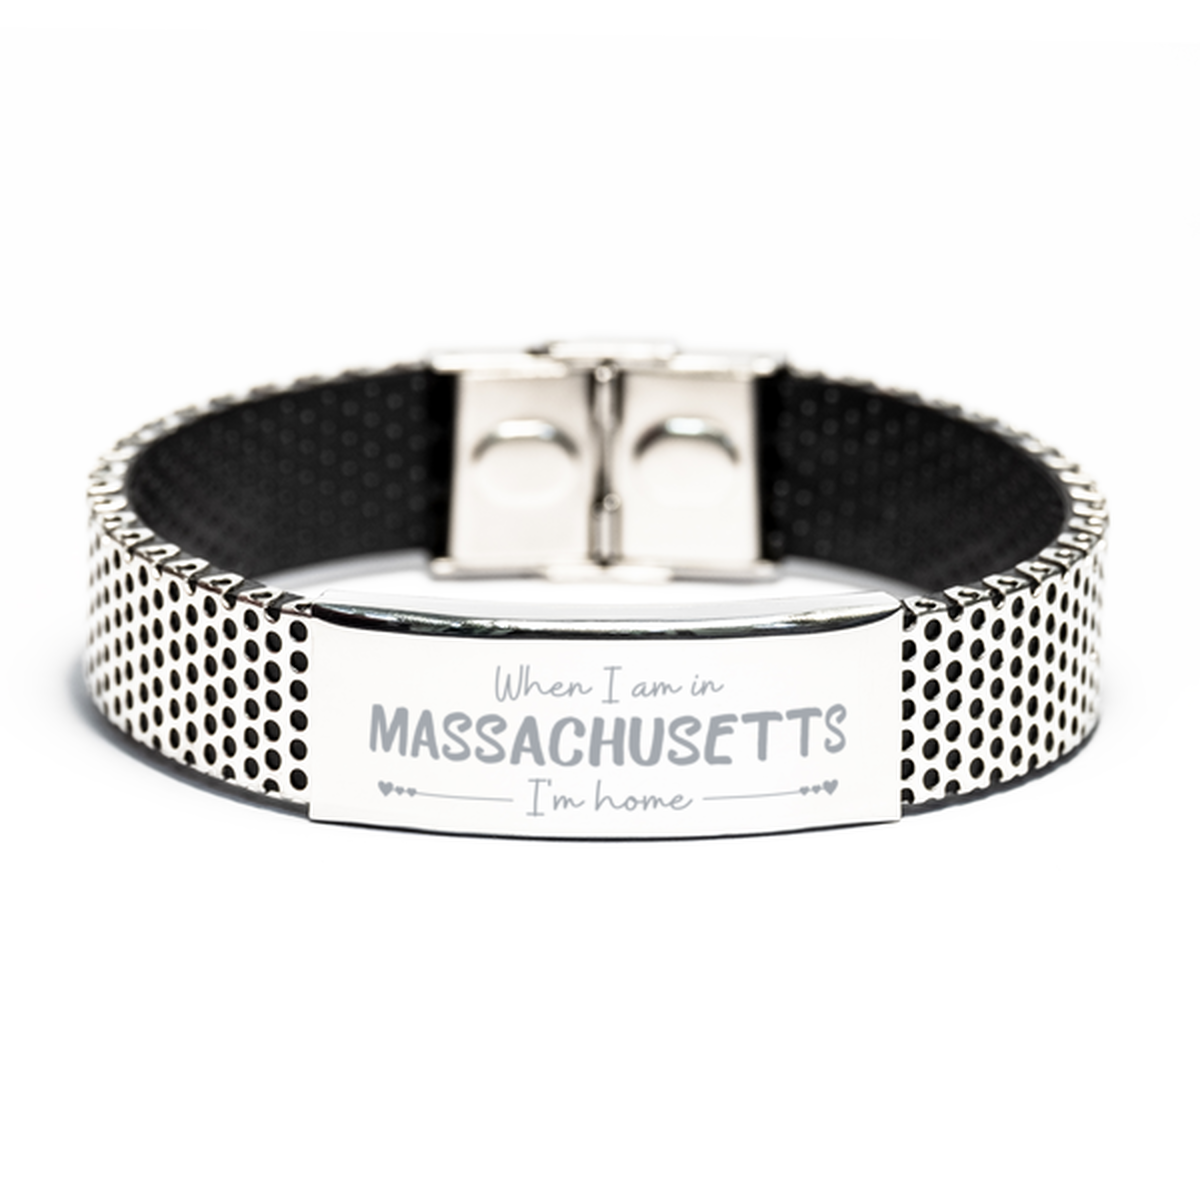 When I am in Massachusetts I'm home Stainless Steel Bracelet, Cheap Gifts For Massachusetts, State Massachusetts Birthday Gifts for Friends Coworker